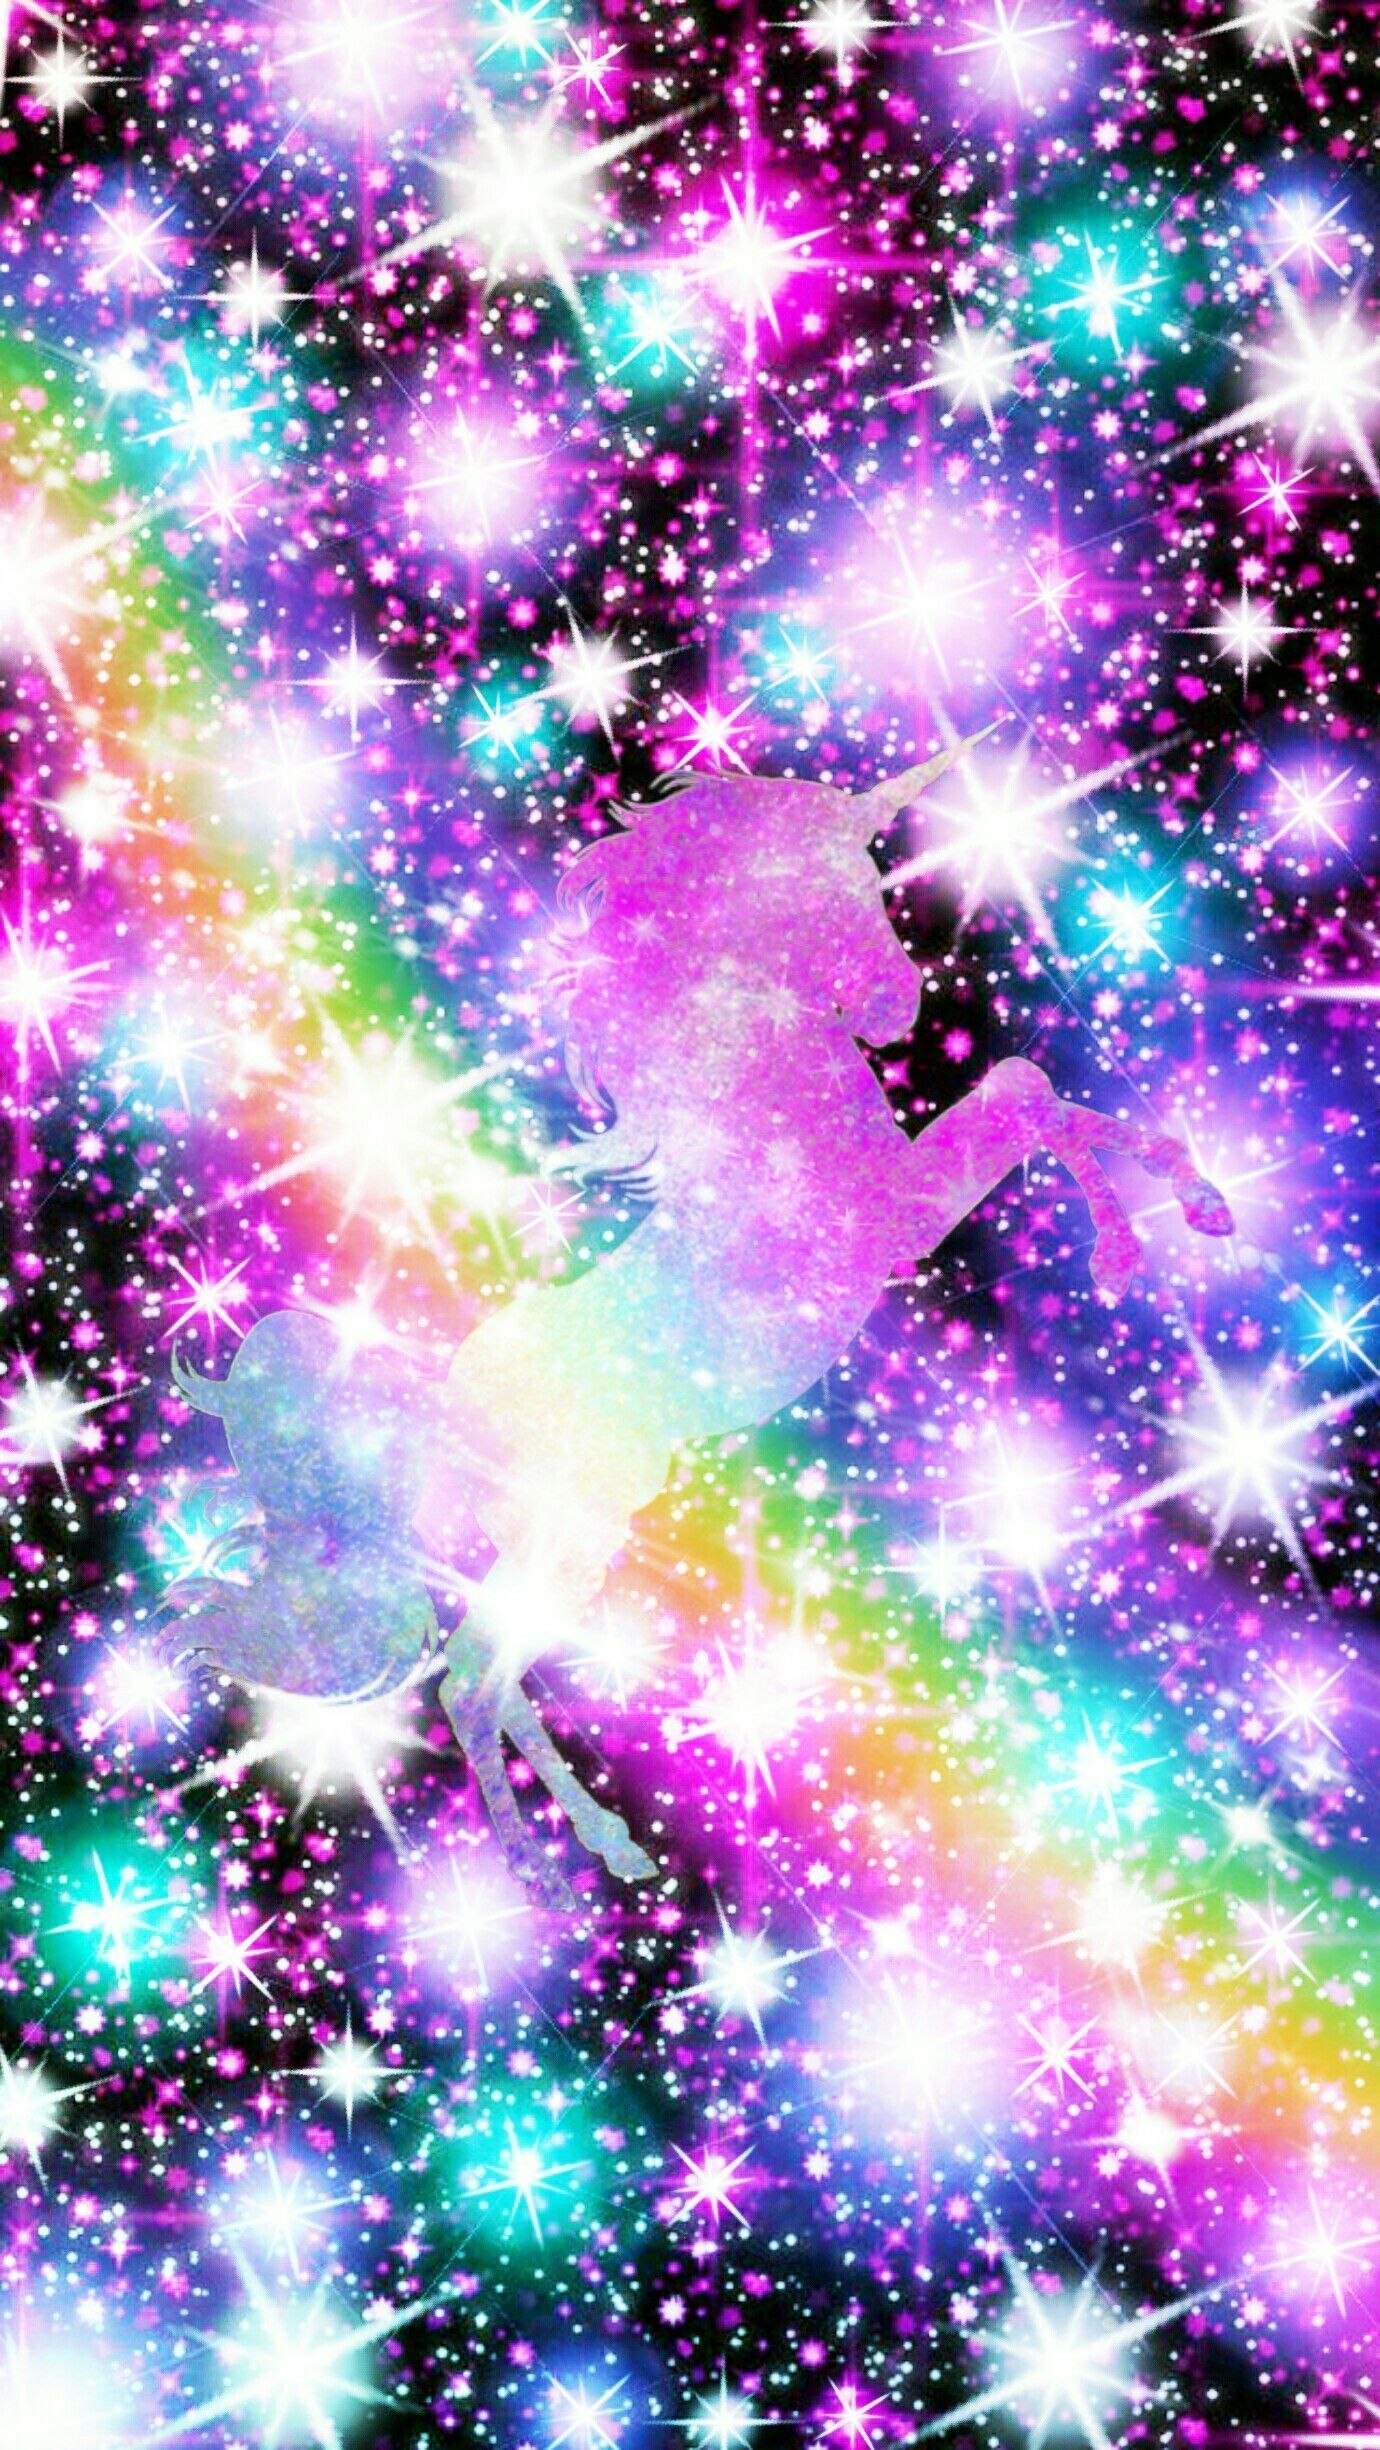 Unicorn Glitter Wallpapers - 4k, HD Unicorn Glitter Backgrounds on ...